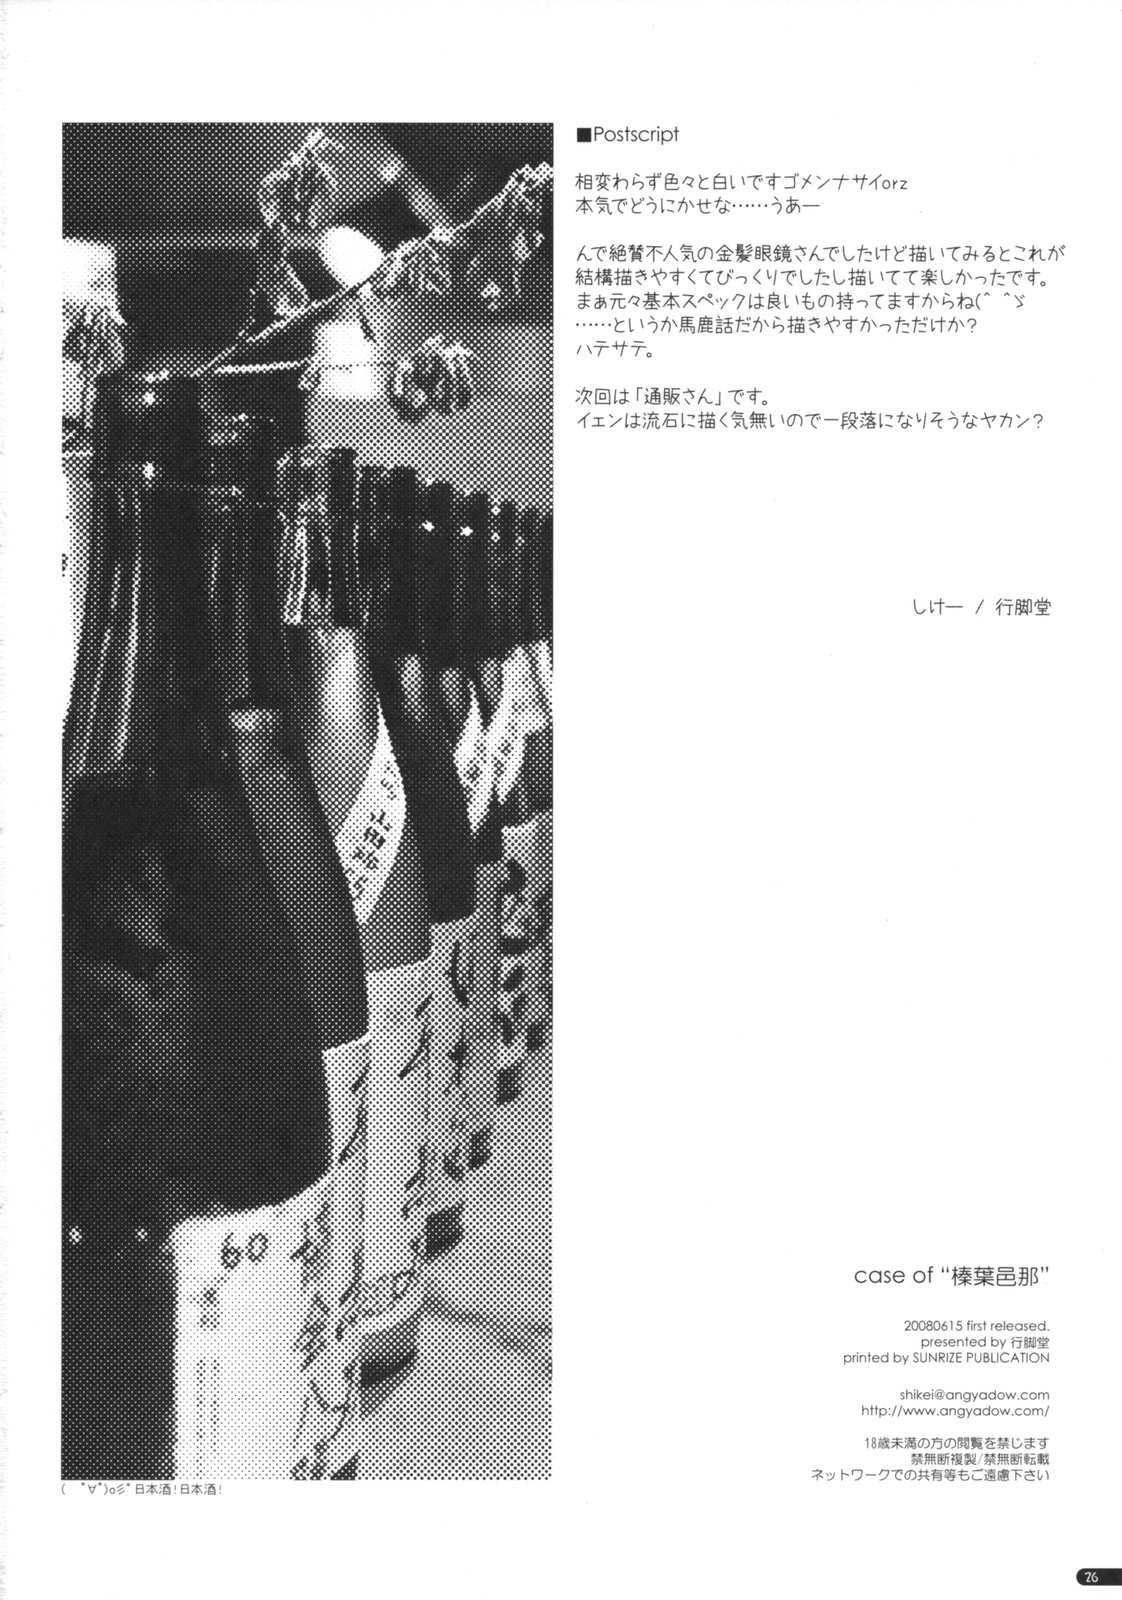 [Angyadow] case of &#039;&#039;shin ha mura na&#039;&#039; (Kanishino) 